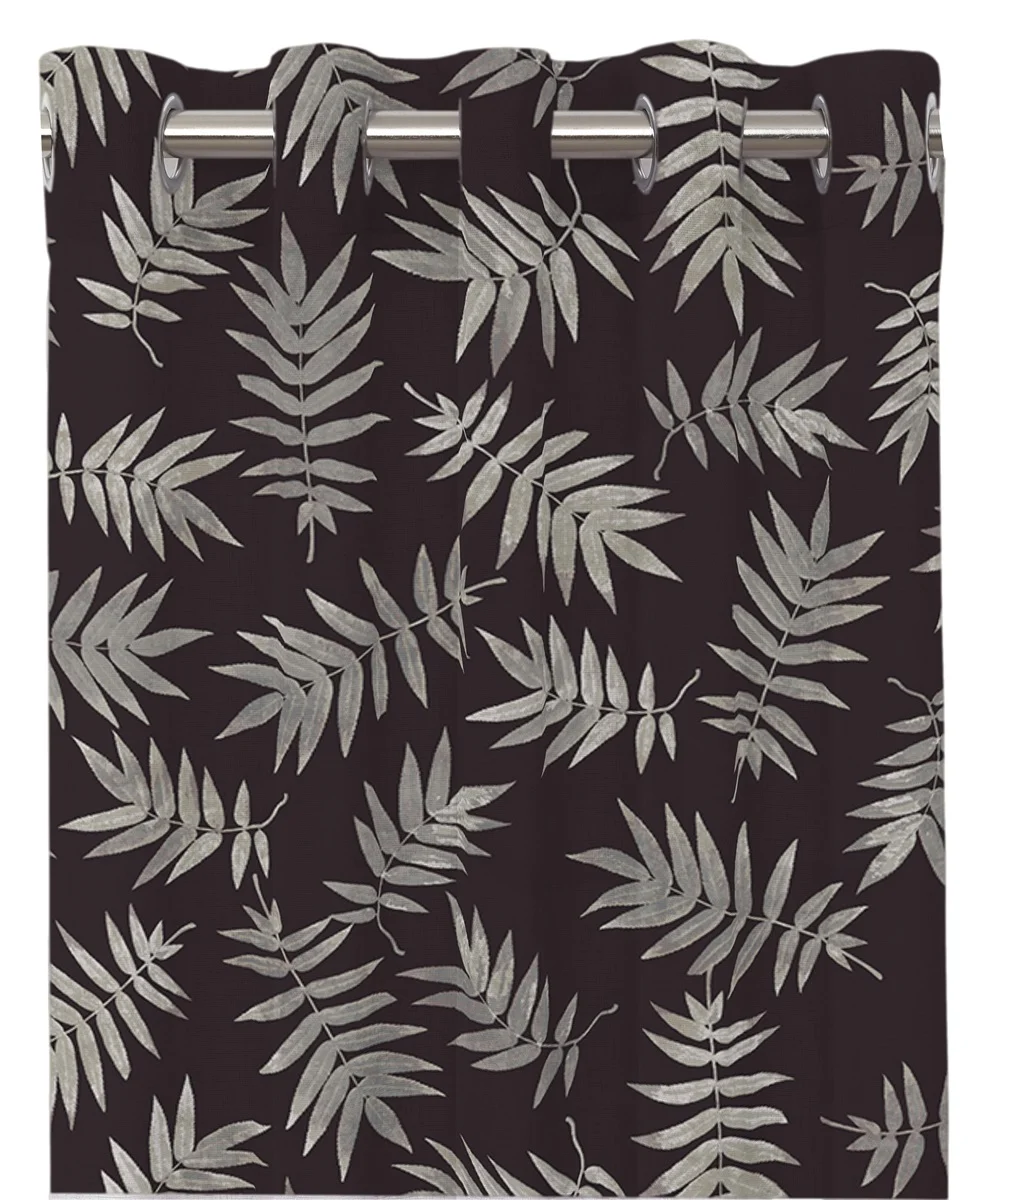 Ray ett färdigsytt gardinset i bomull med öljetter i svart med gråa blad, från Redlunds textil